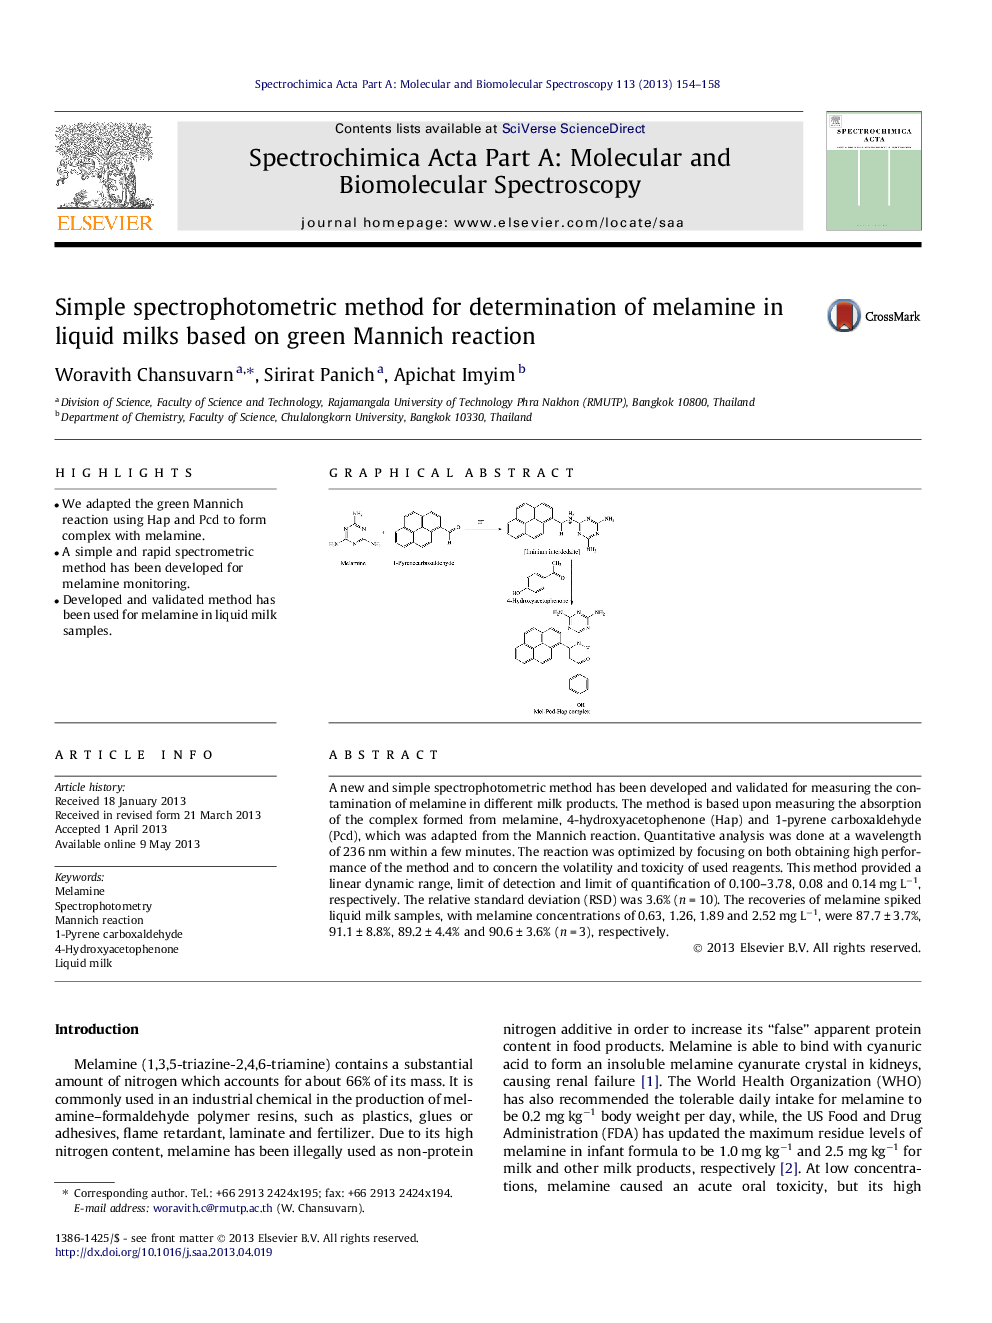 روش اسپکتروفتومتر ساده برای تعیین ملامین در شیر مایع بر اساس واکنش سبز منیچ 